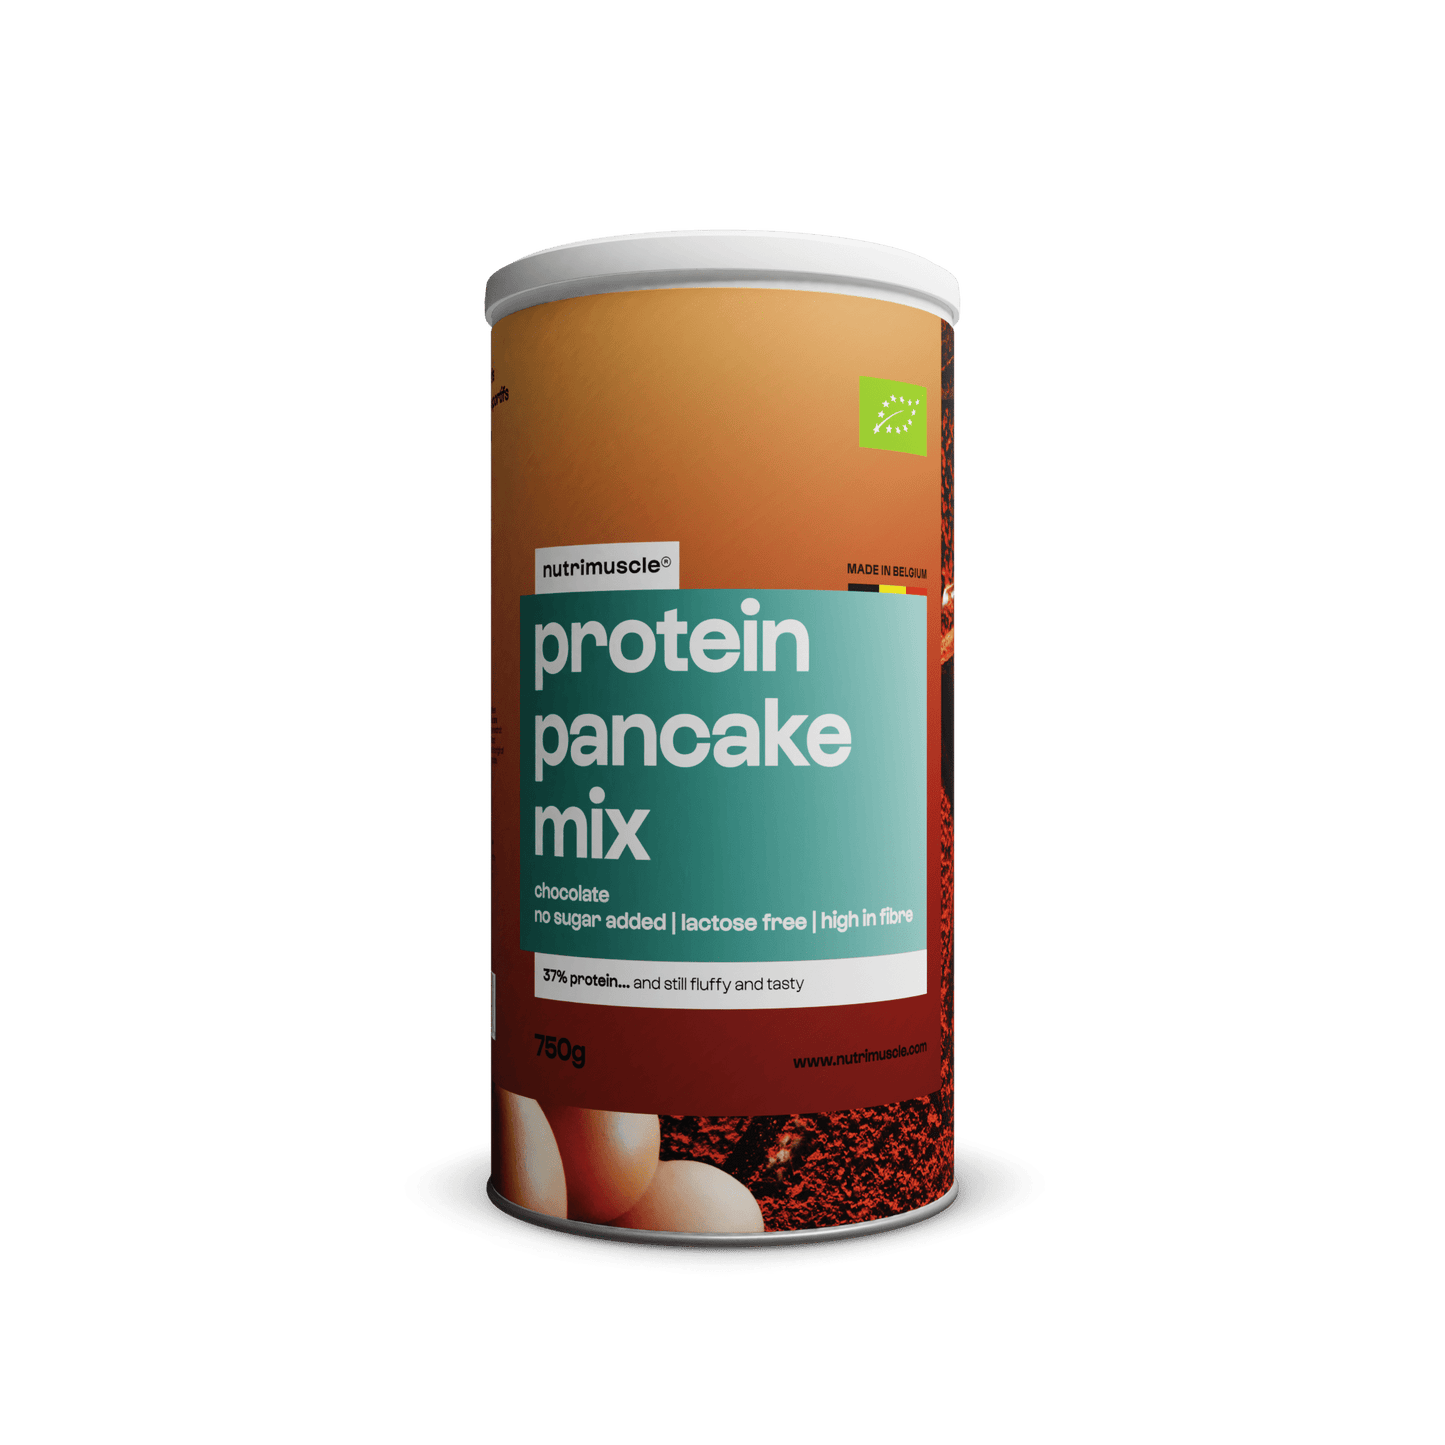 Nutrimuscle Protéines 750 g / Chocolat Mix pour pancakes protéinés bio